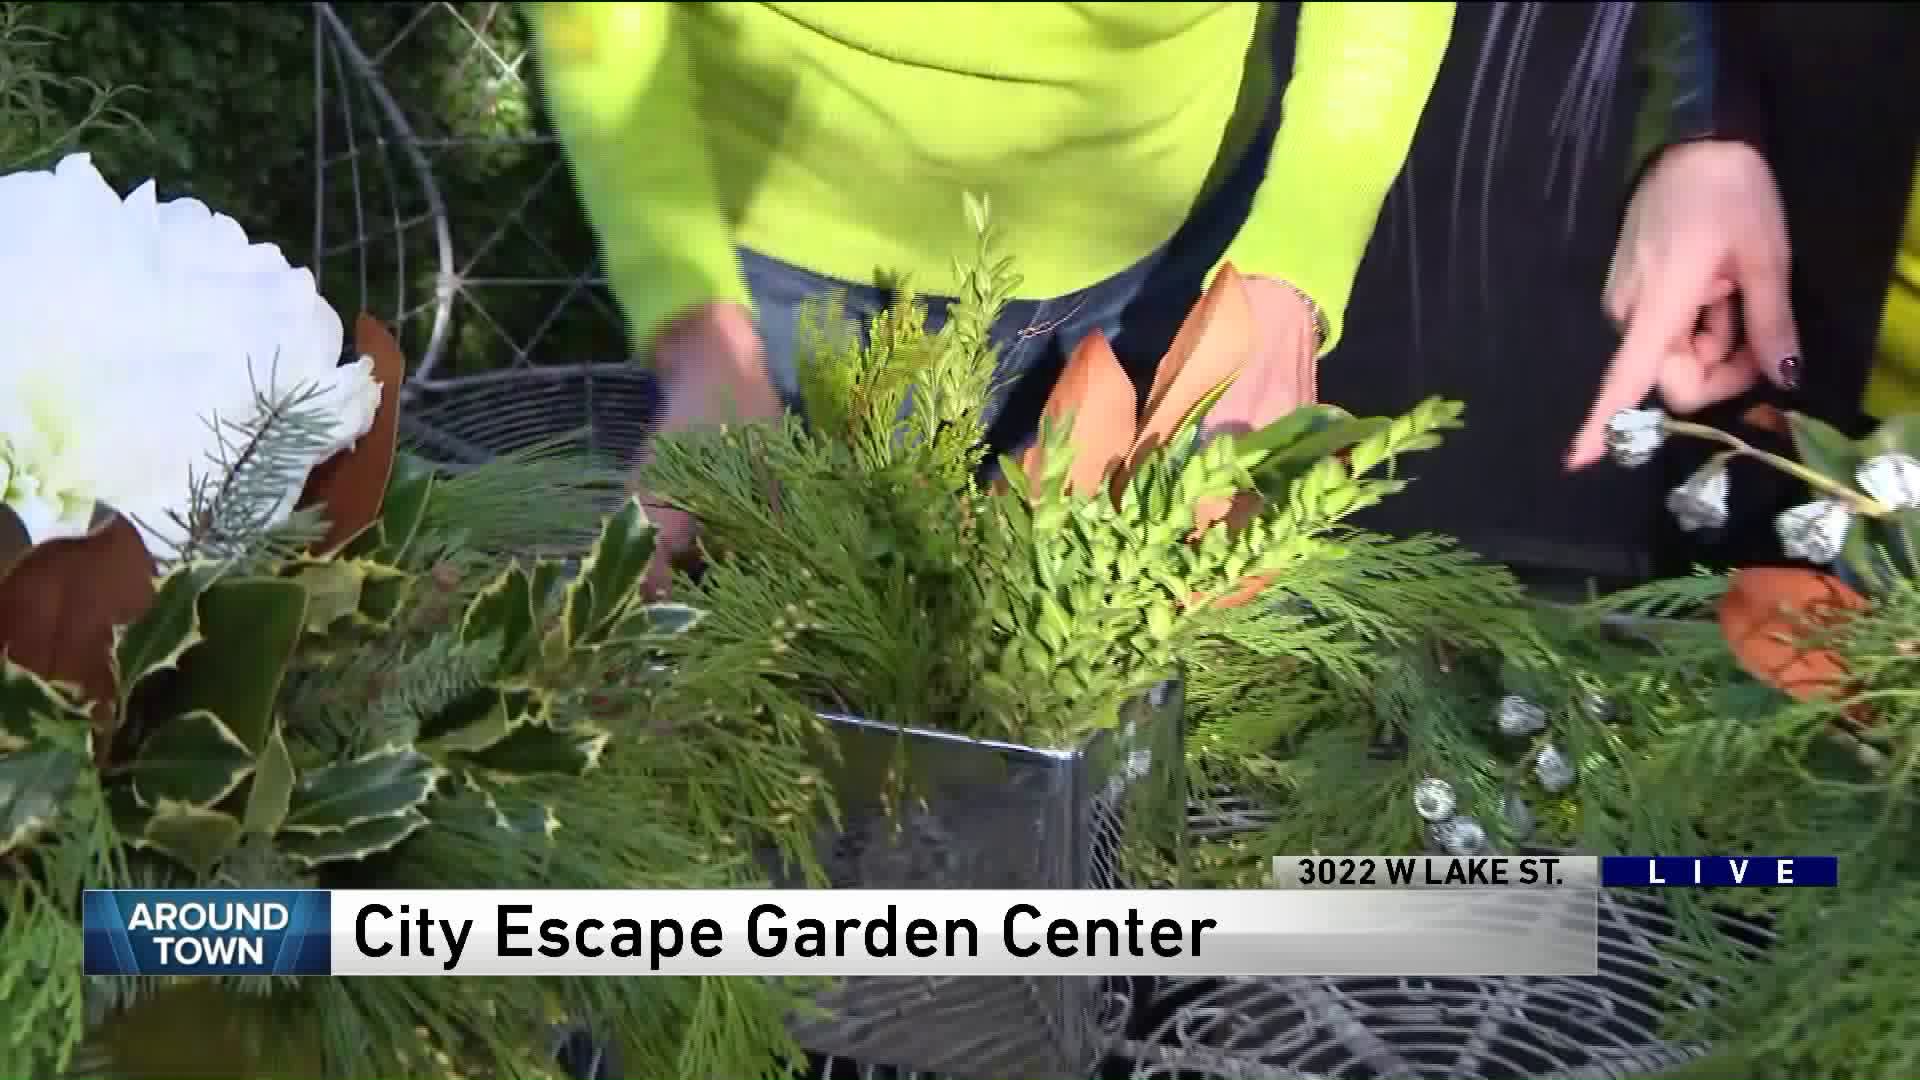 Around Town checks out City Escape Garden Center + Design Studio